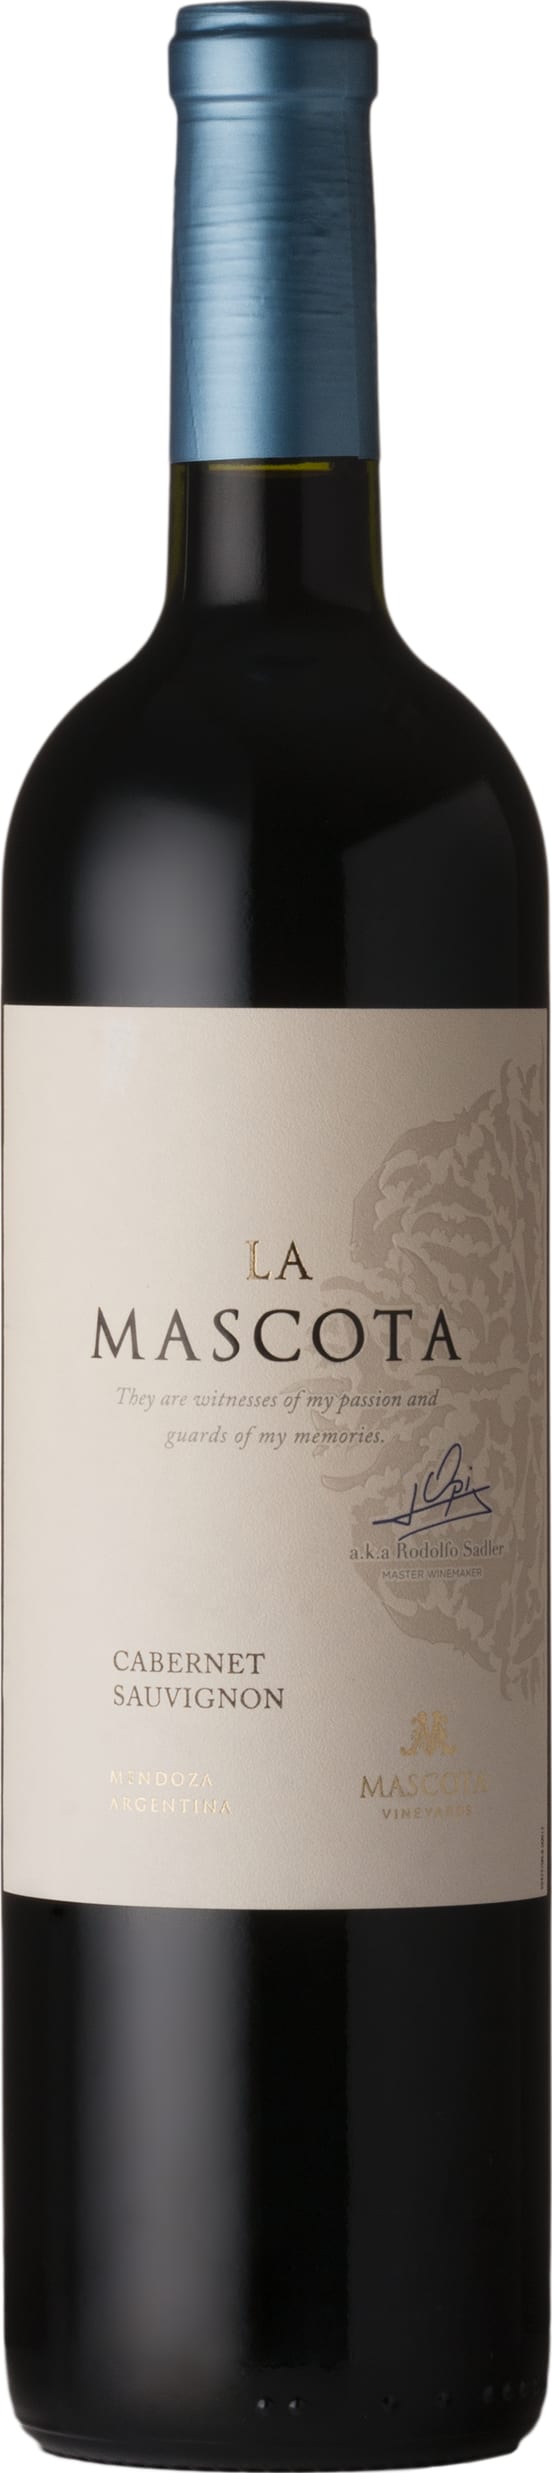 La Mascota 2021 Cabernet Sauvignon, La Mascota 2021 75cl - Buy La Mascota Wines from GREAT WINES DIRECT wine shop